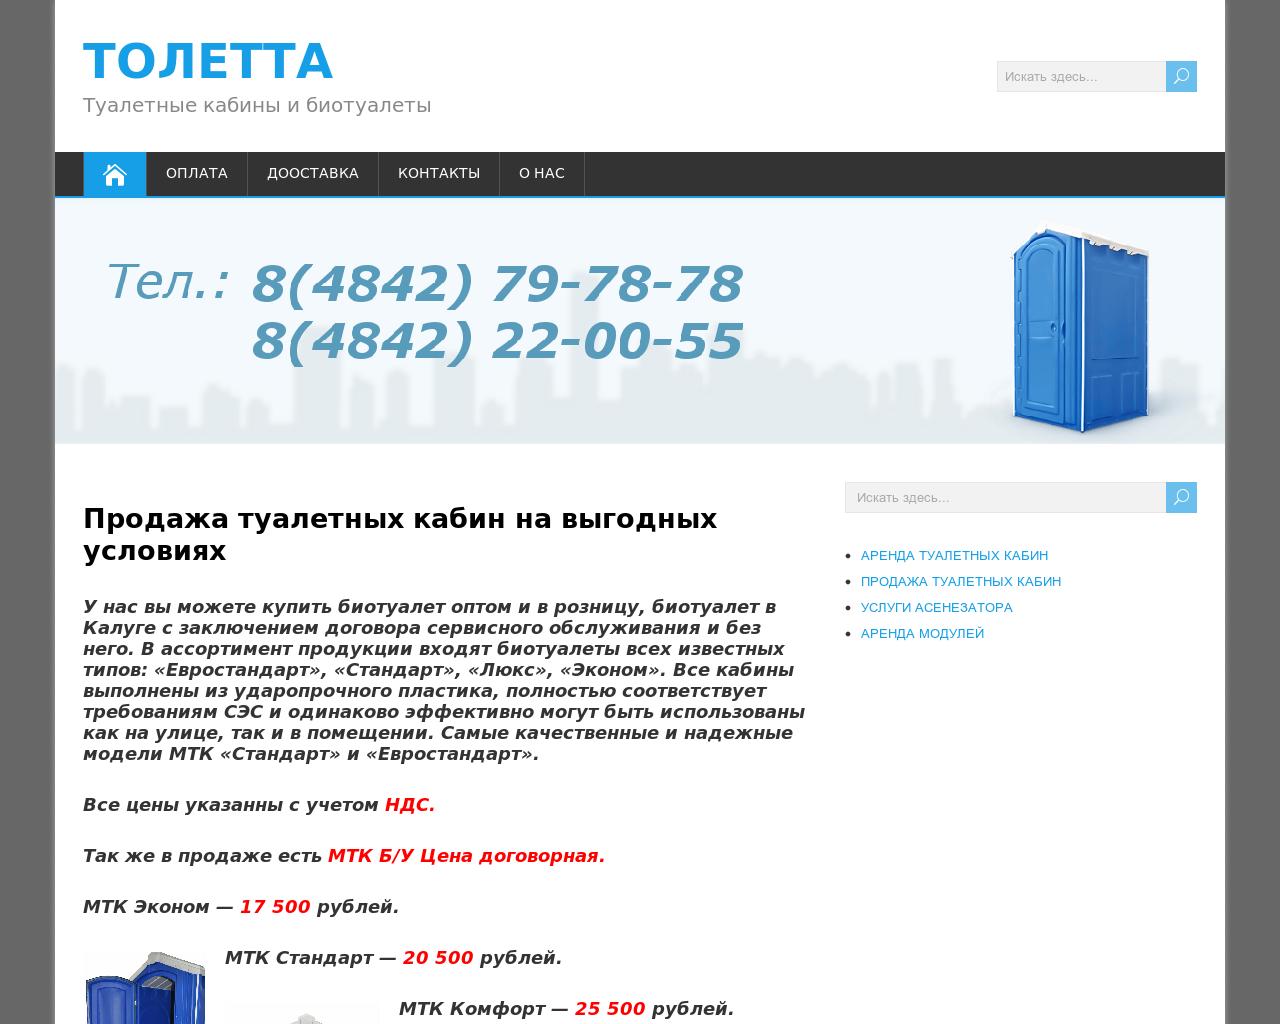 Изображение сайта toletta40.ru в разрешении 1280x1024